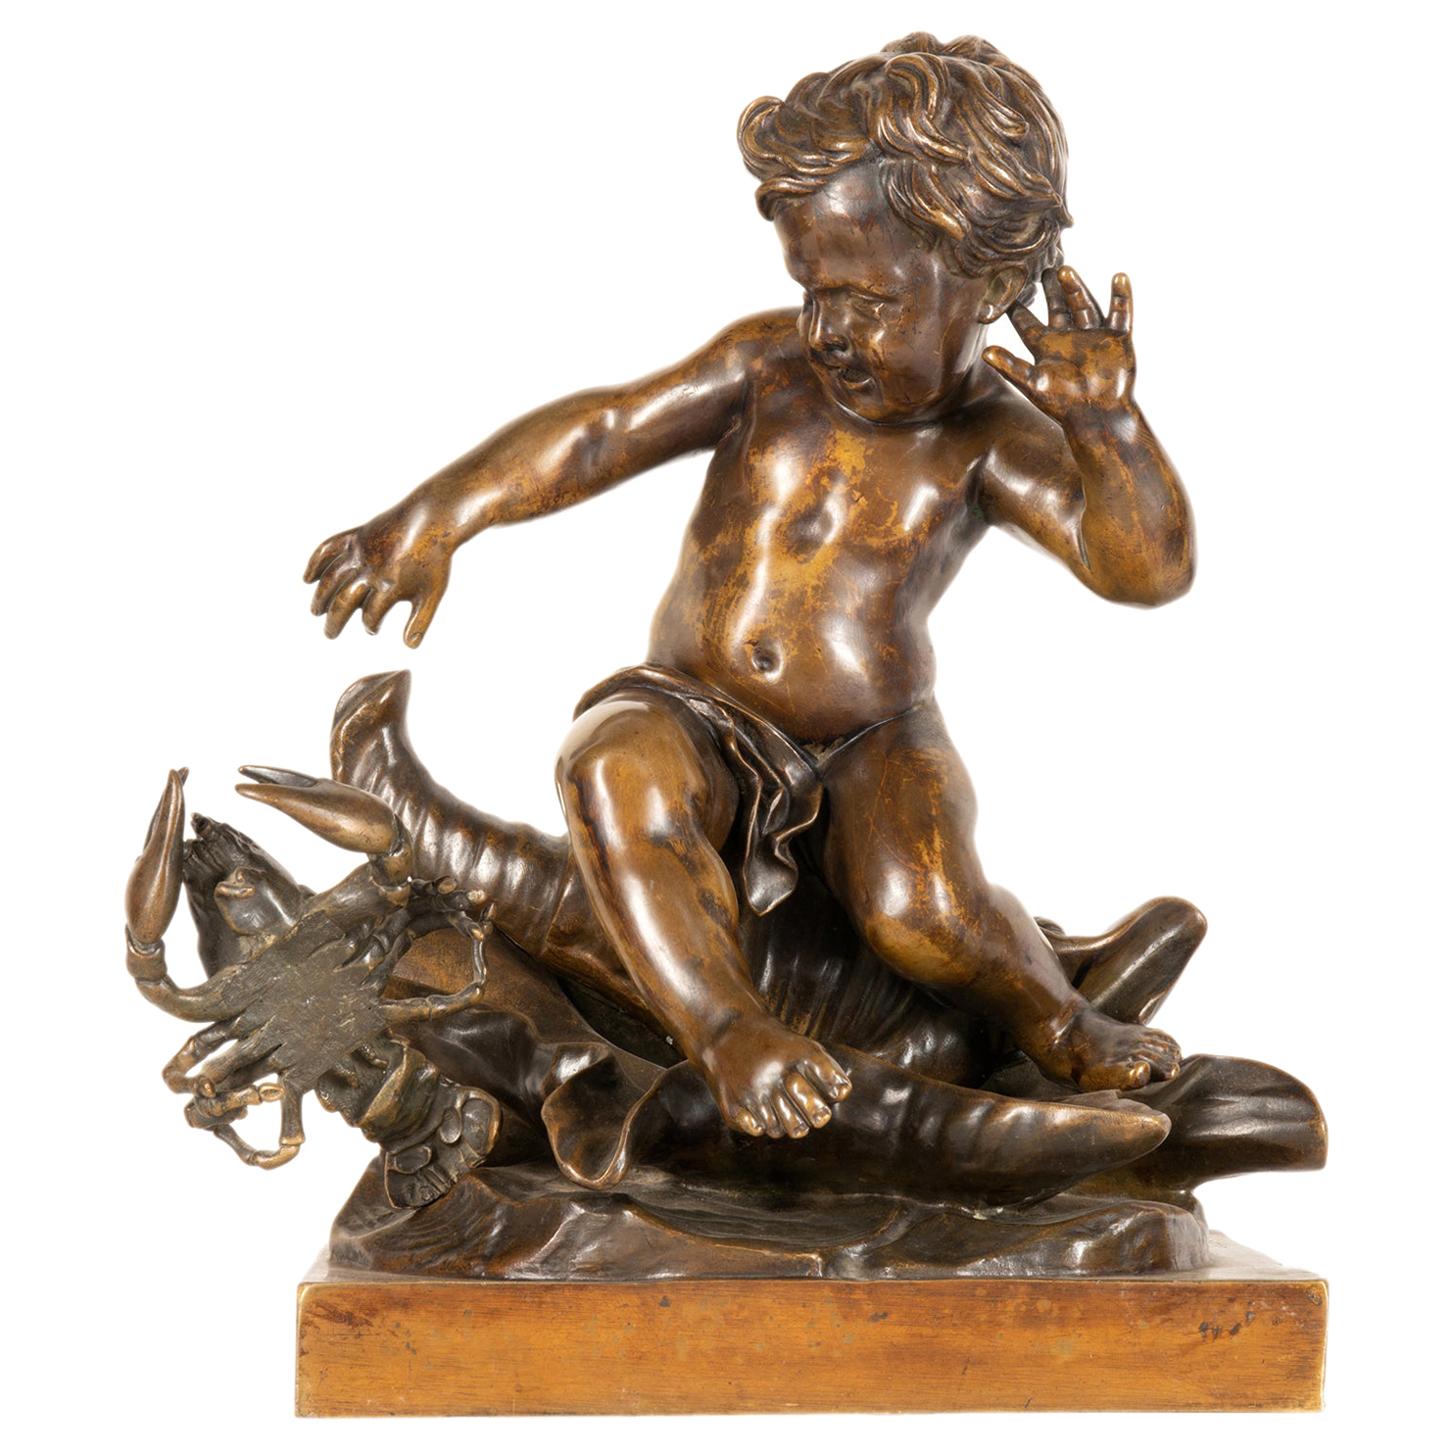 Étude en bronze du 19e siècle représentant un enfant assis sur un coquillage, signée Pigale